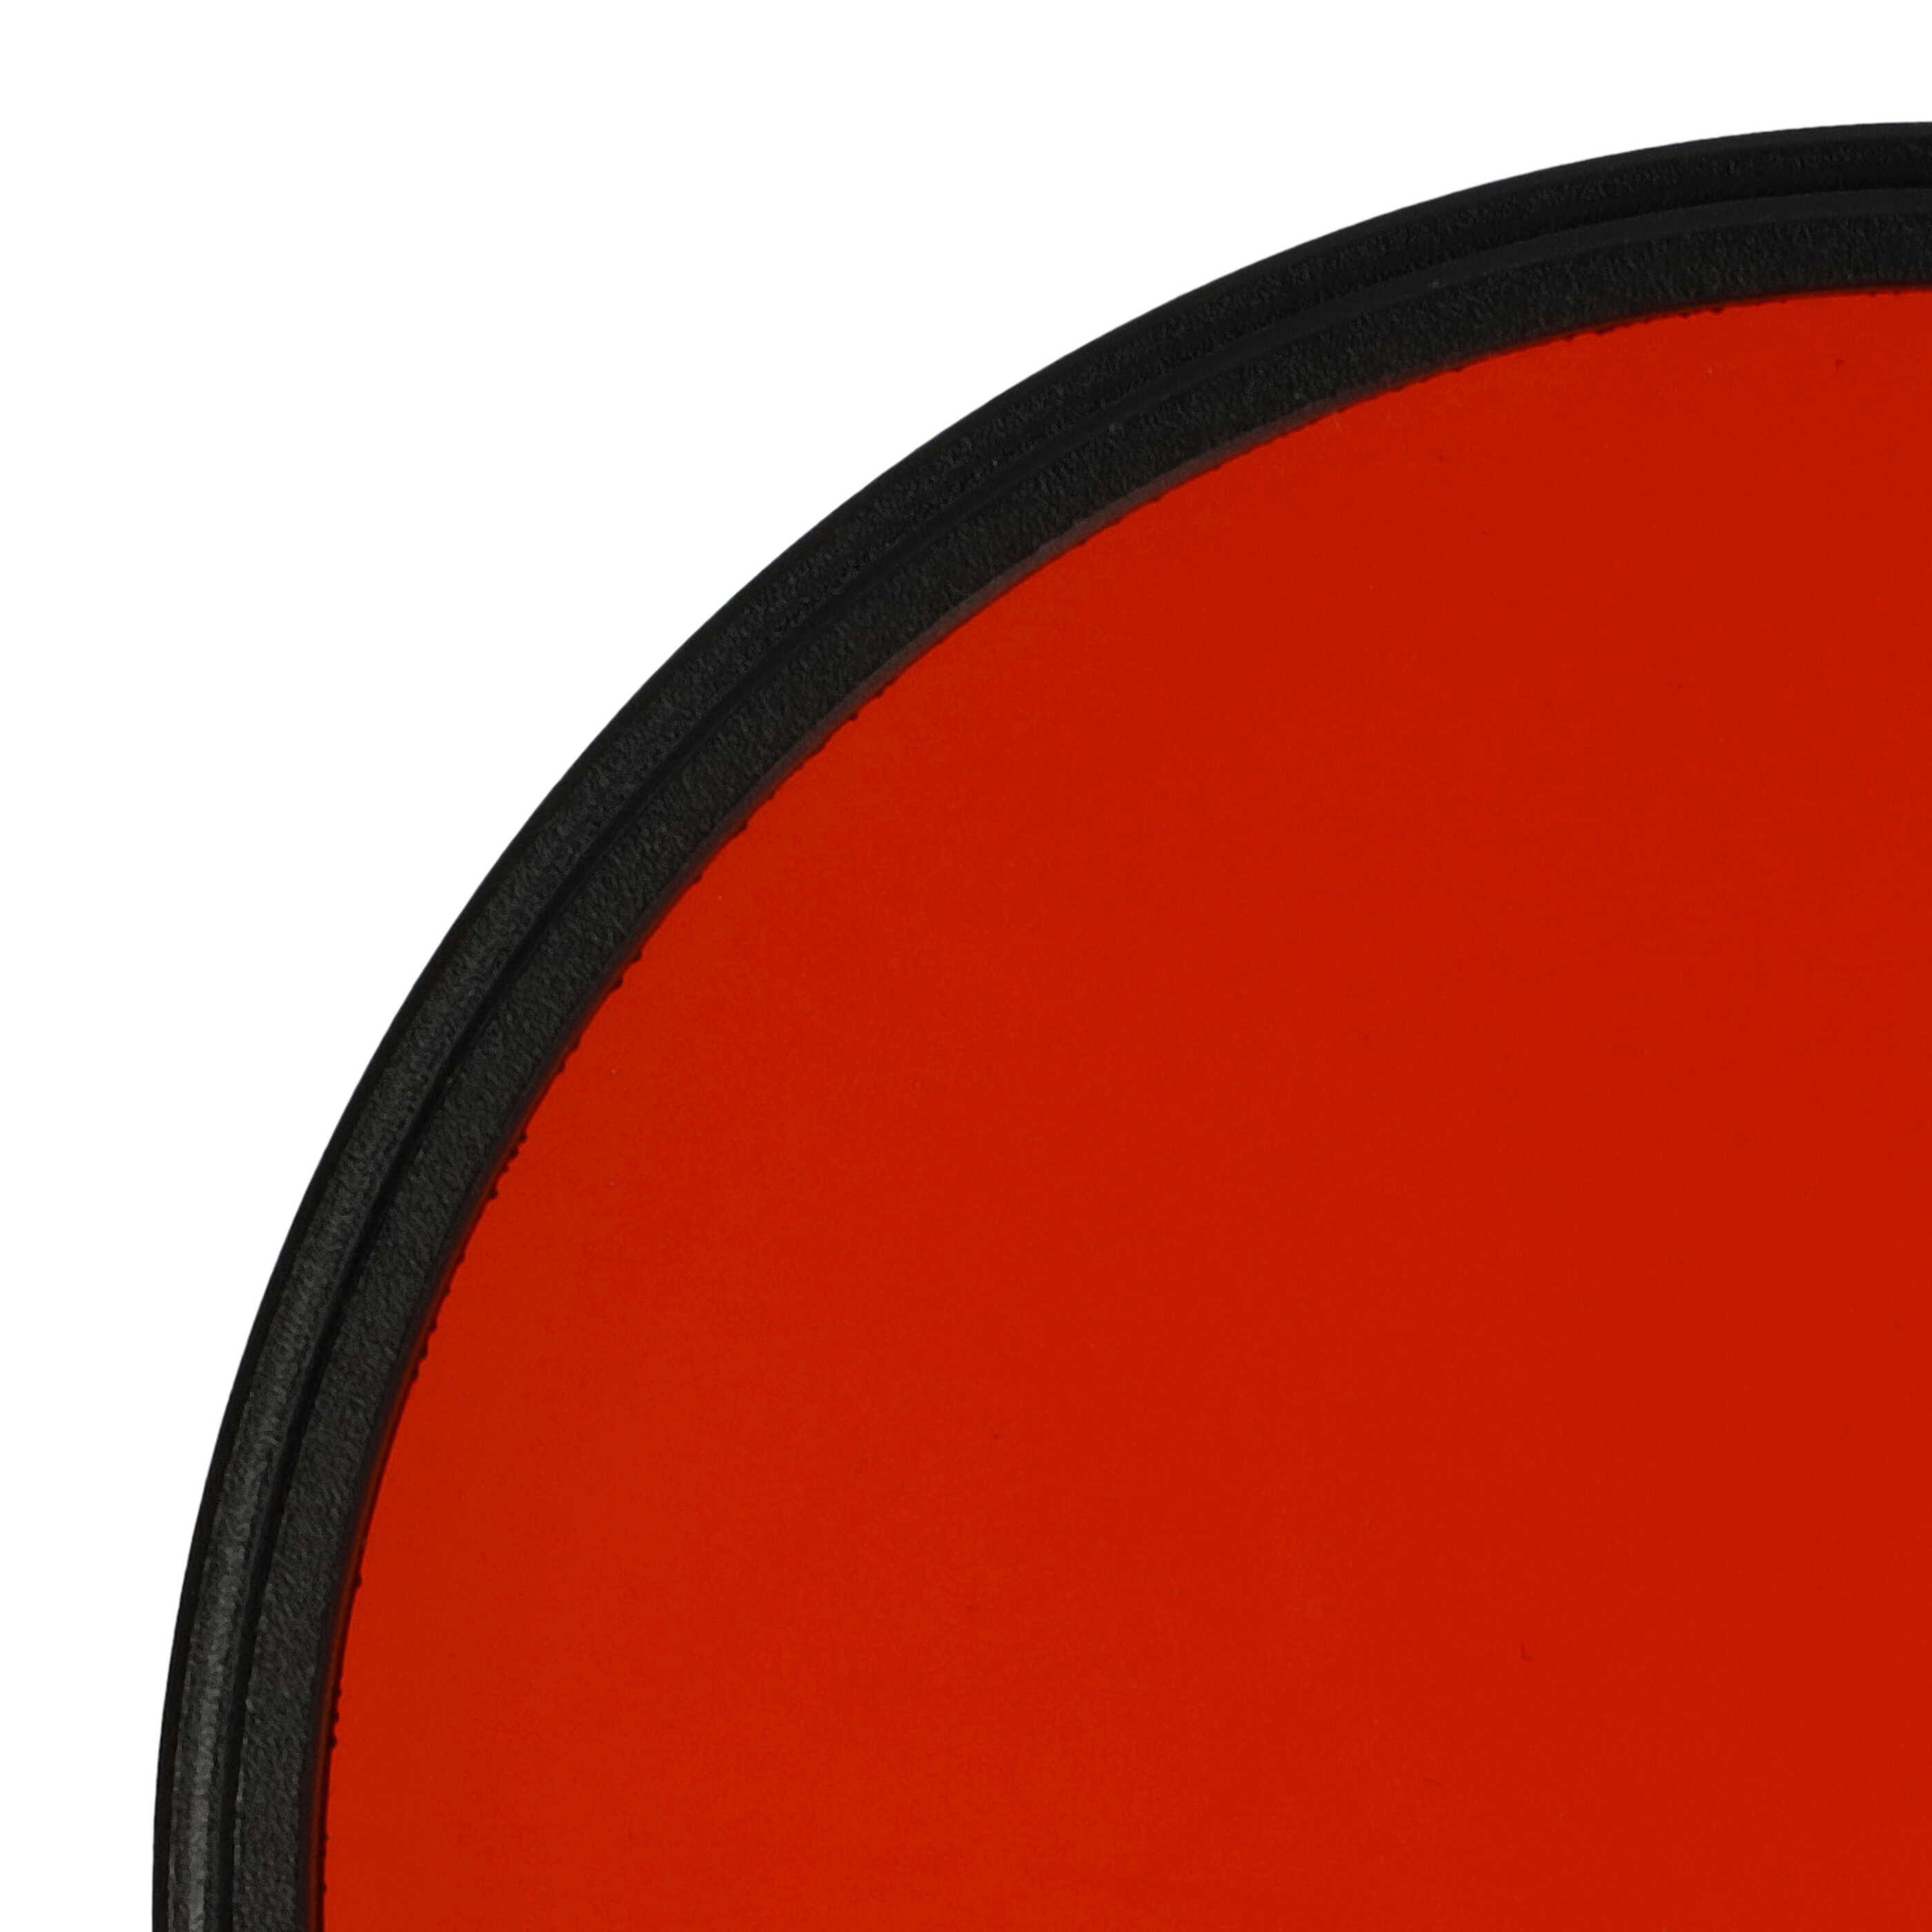 Filtro colorato per obiettivi fotocamera con filettatura da 72 mm - filtro arancione